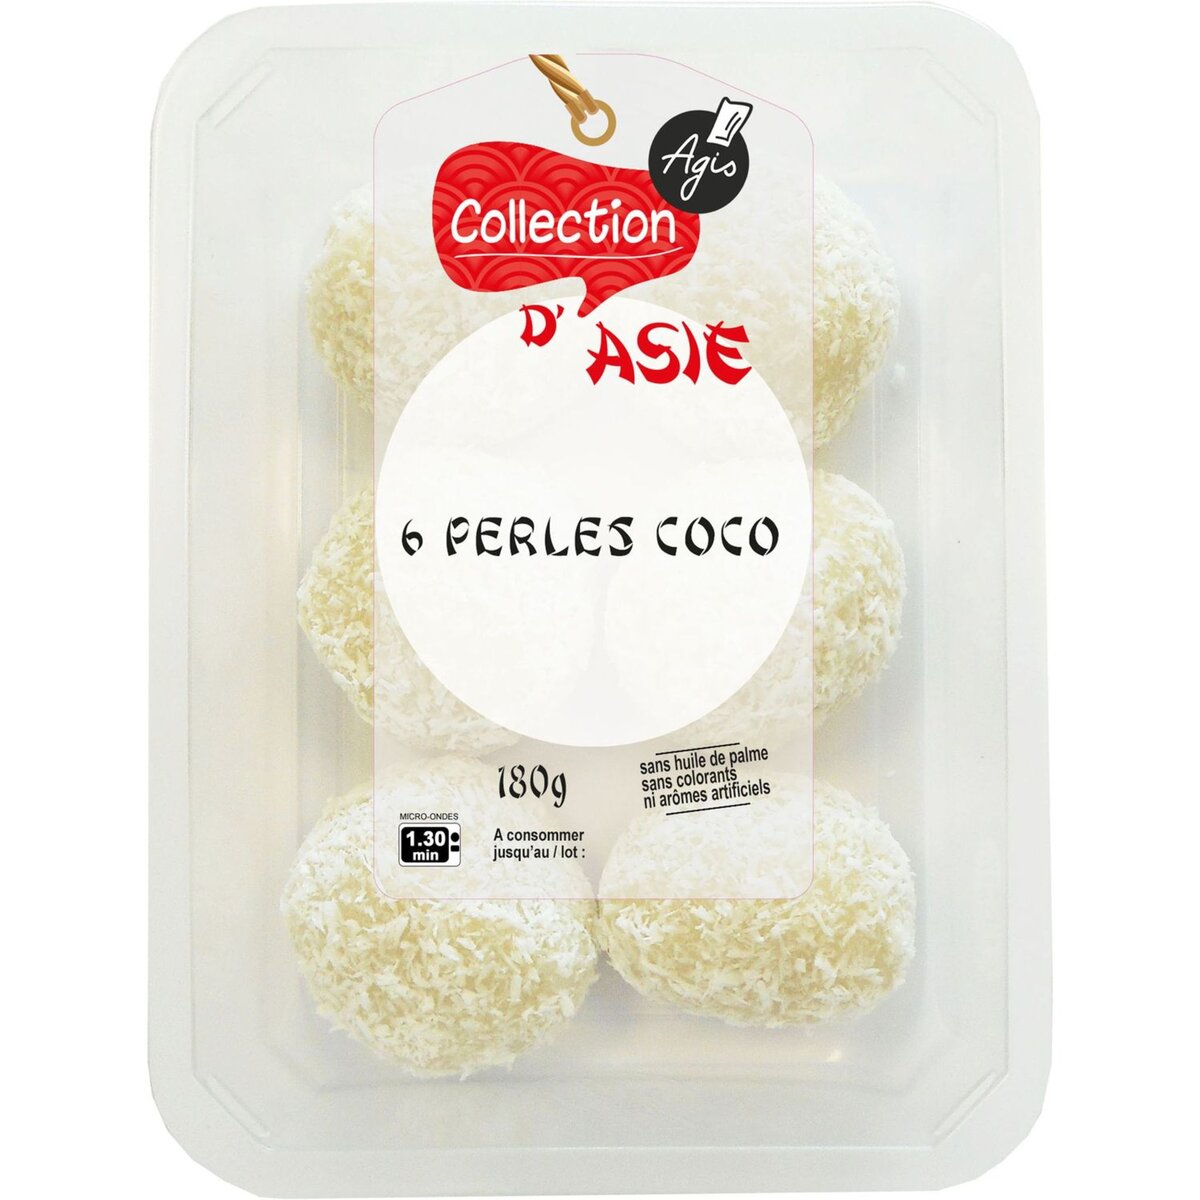 AGIS Collection d'Asie Perles de coco 6 pièces 180g